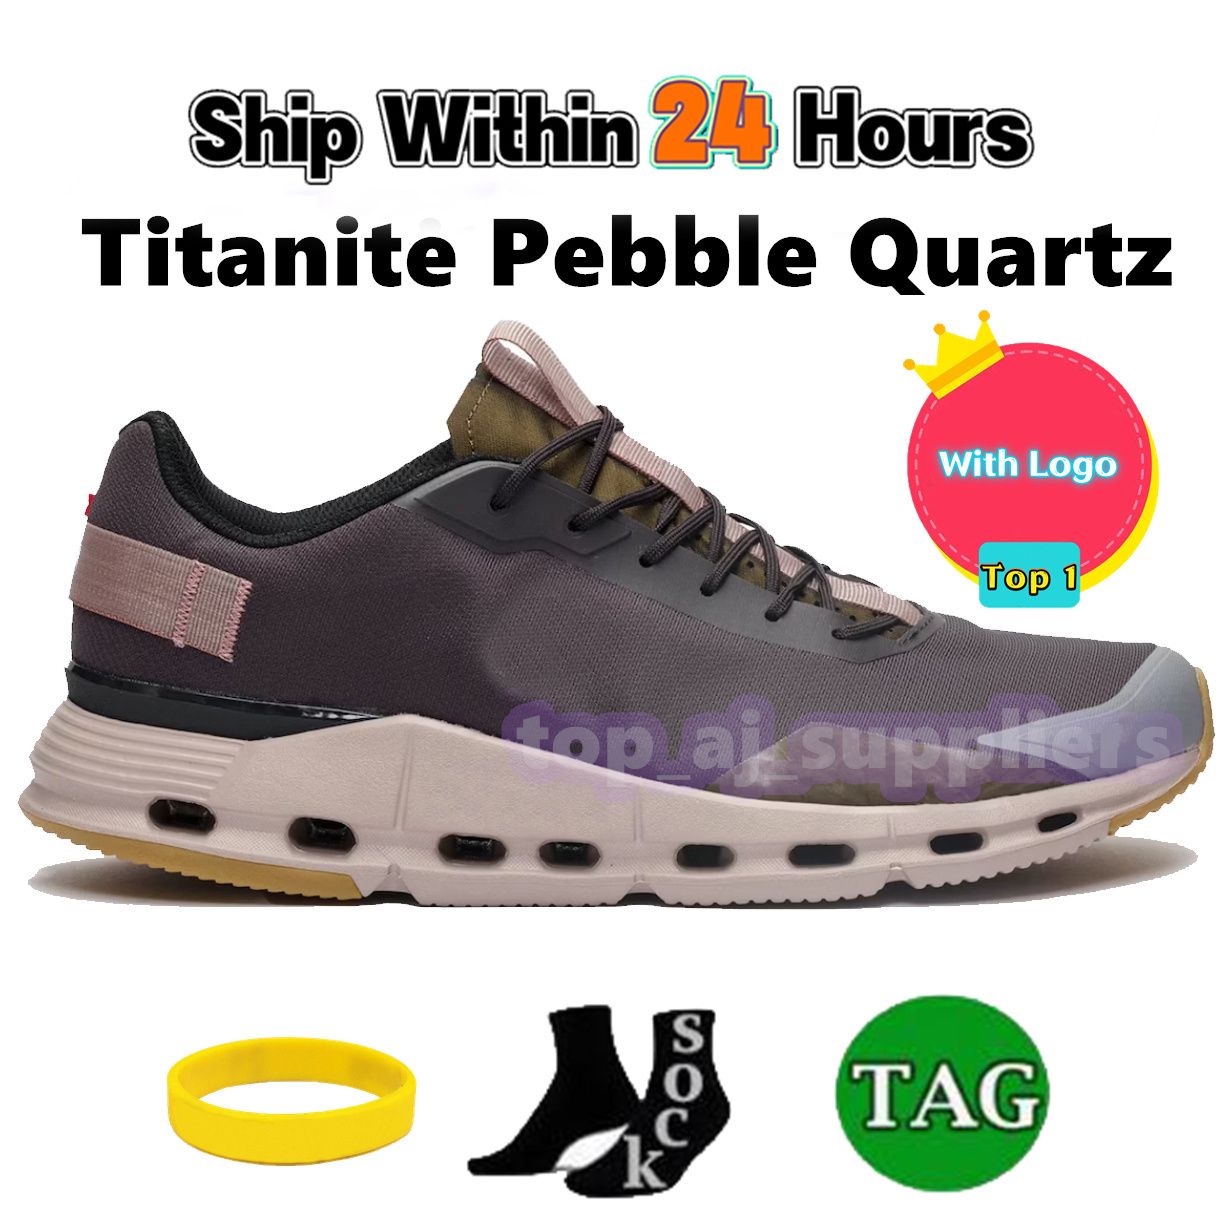 09 Titanite Pebble Quartz